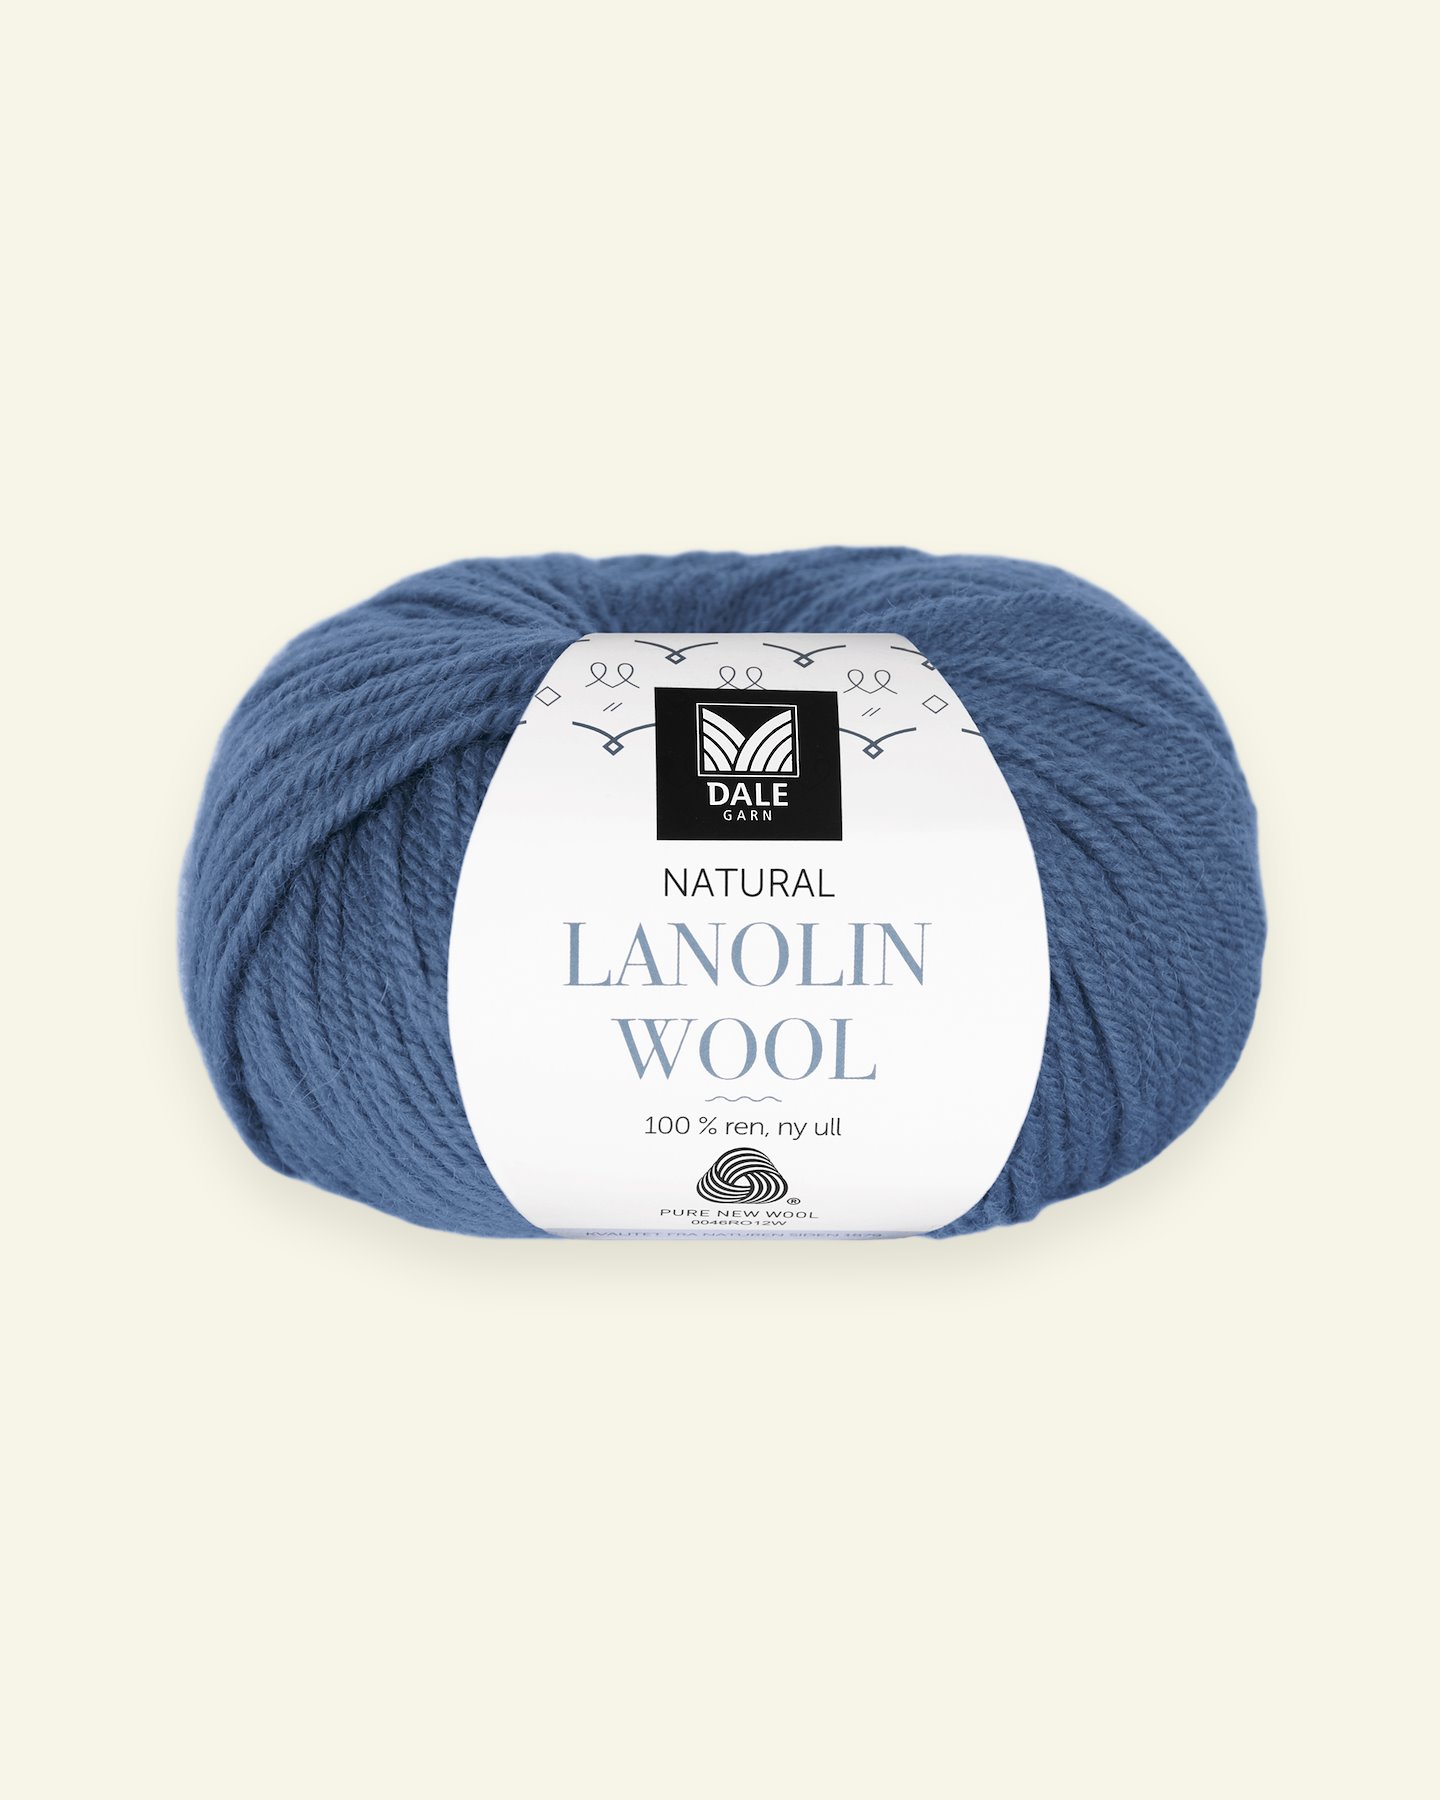 Dale Garn, 100% wool yarn "Lanolin Wool", blue 90000290_pack